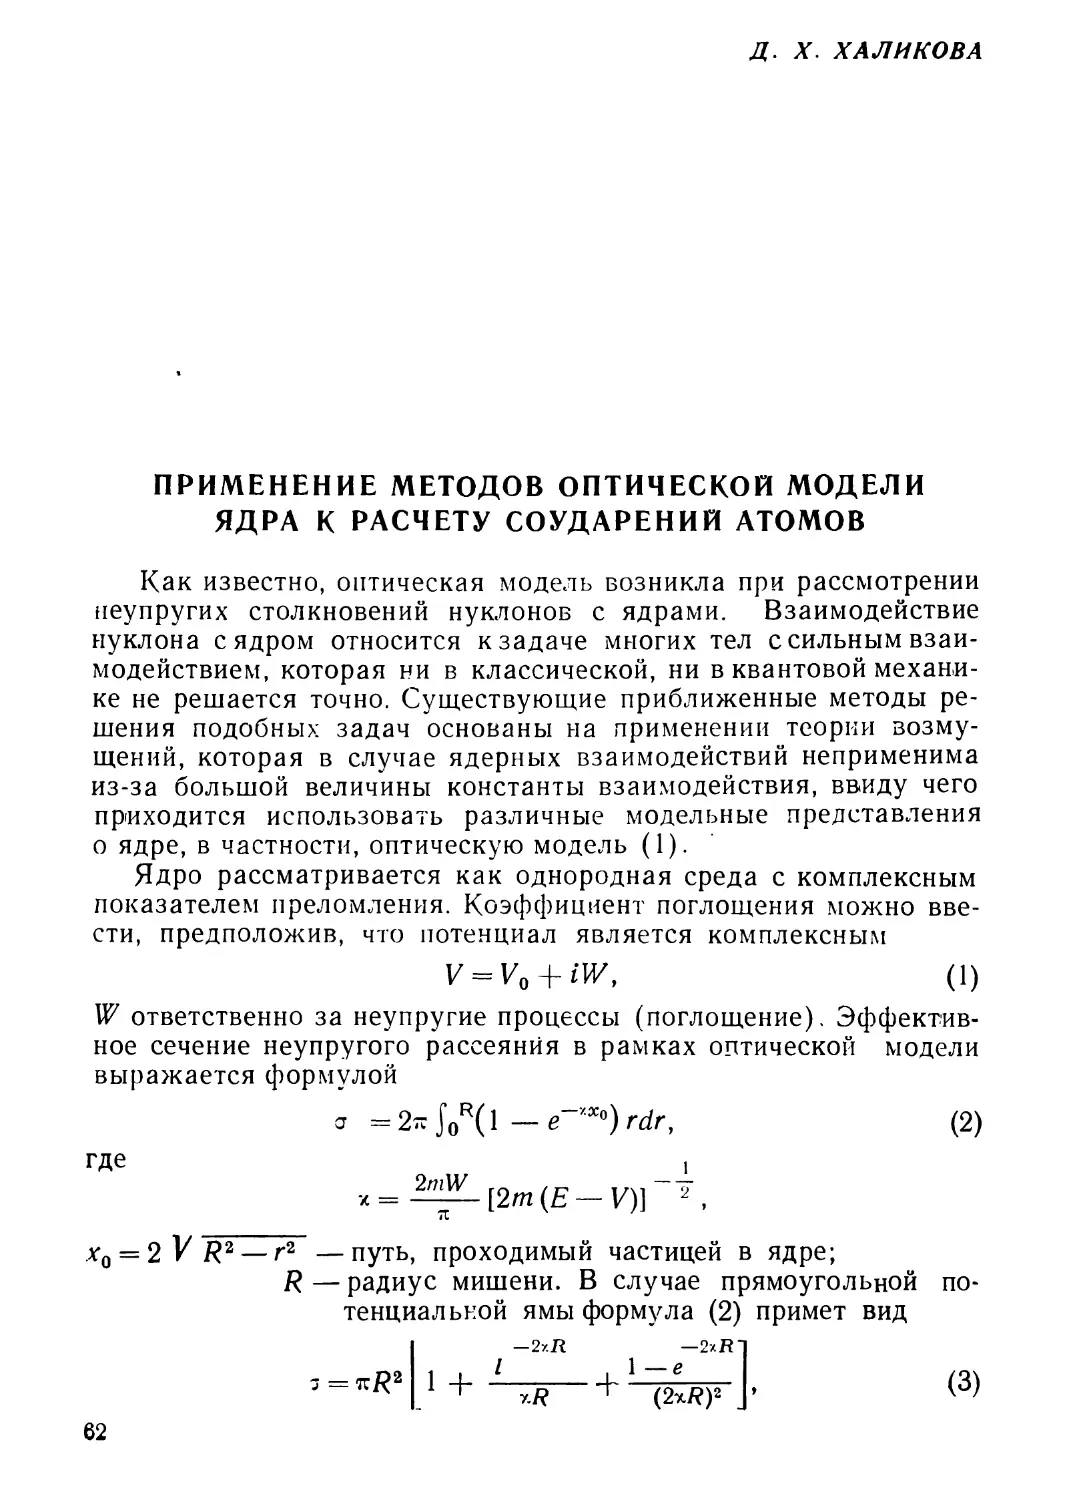 Халикова Д. X. Применение методов оптической модели ядра к расчету соударений атомов